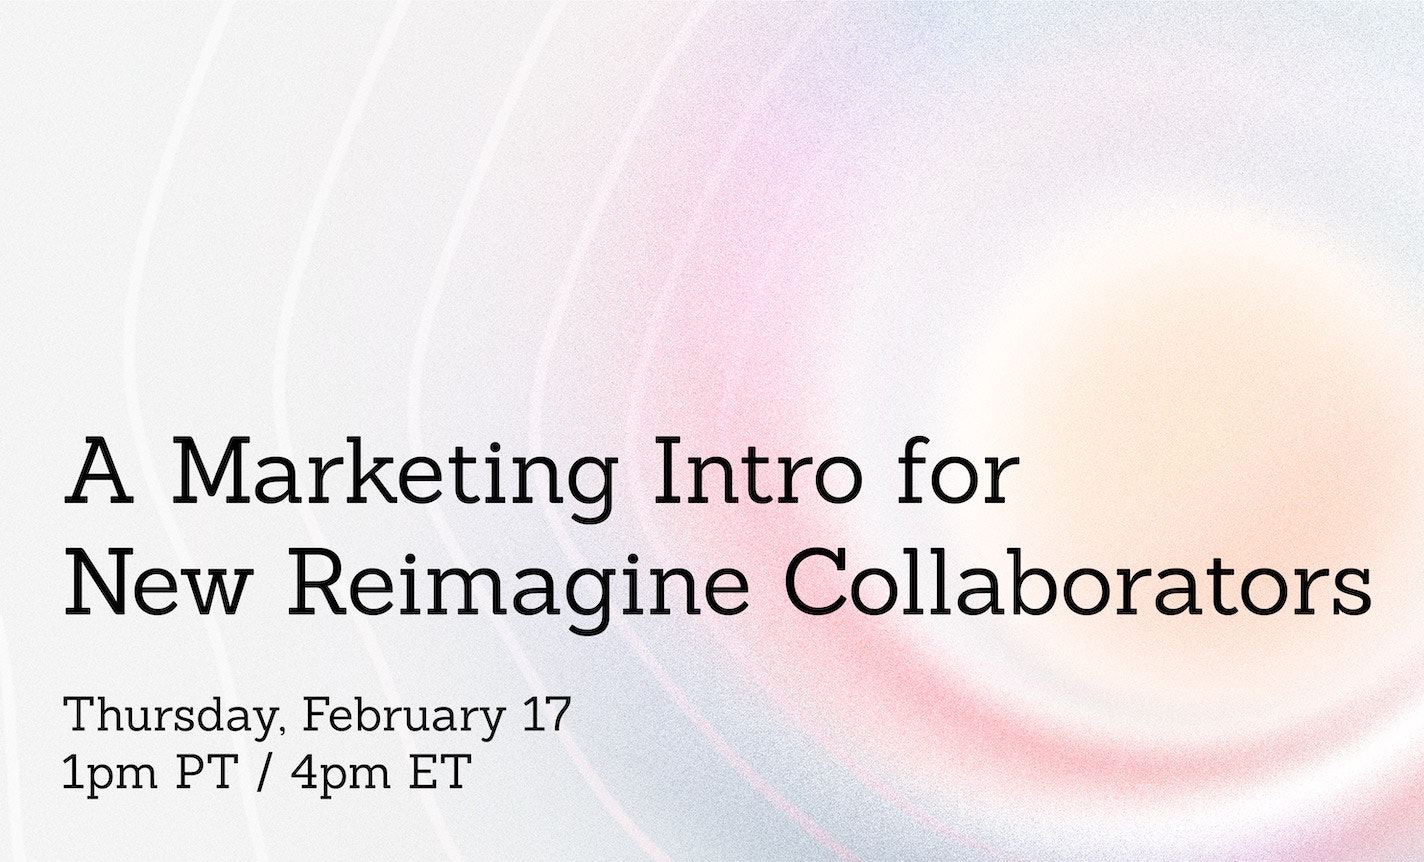 A Marketing Intro for New Reimagine Collaborators